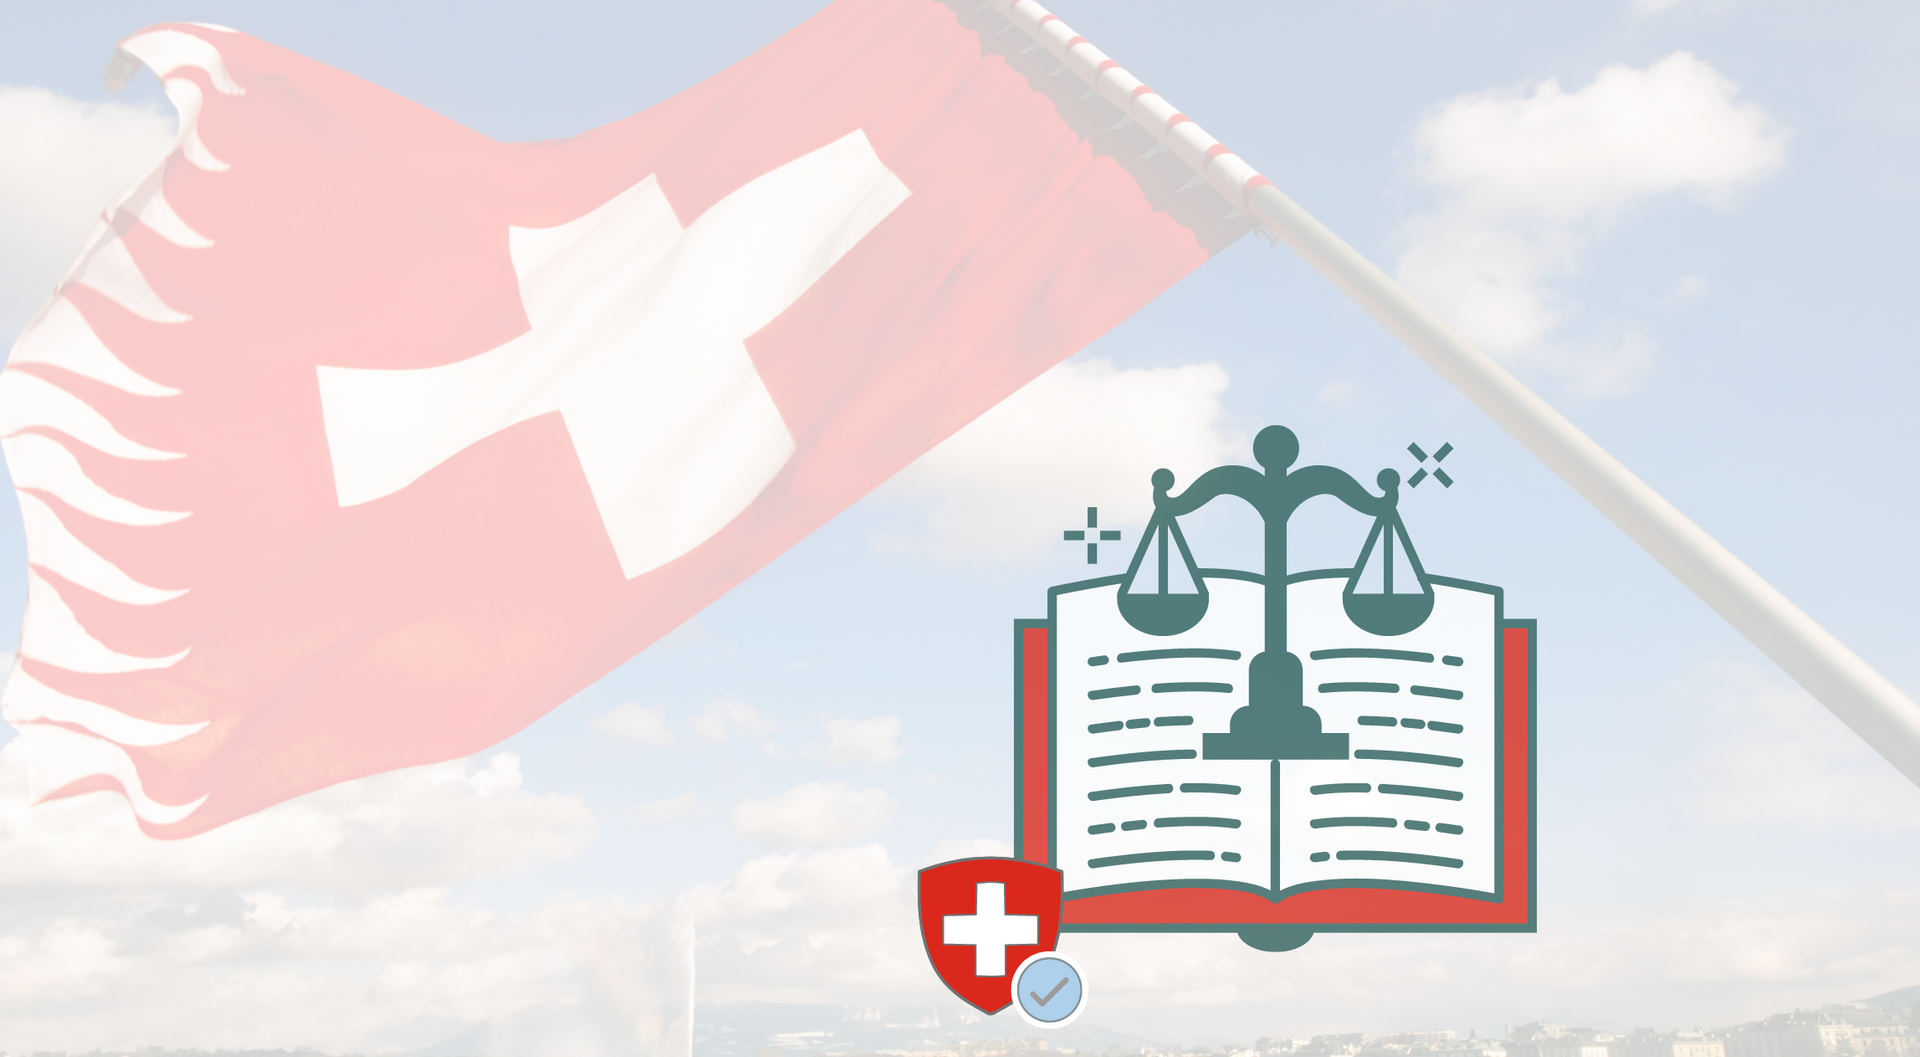 Neues Datenschutzgesetz in der Schweiz ab 2023